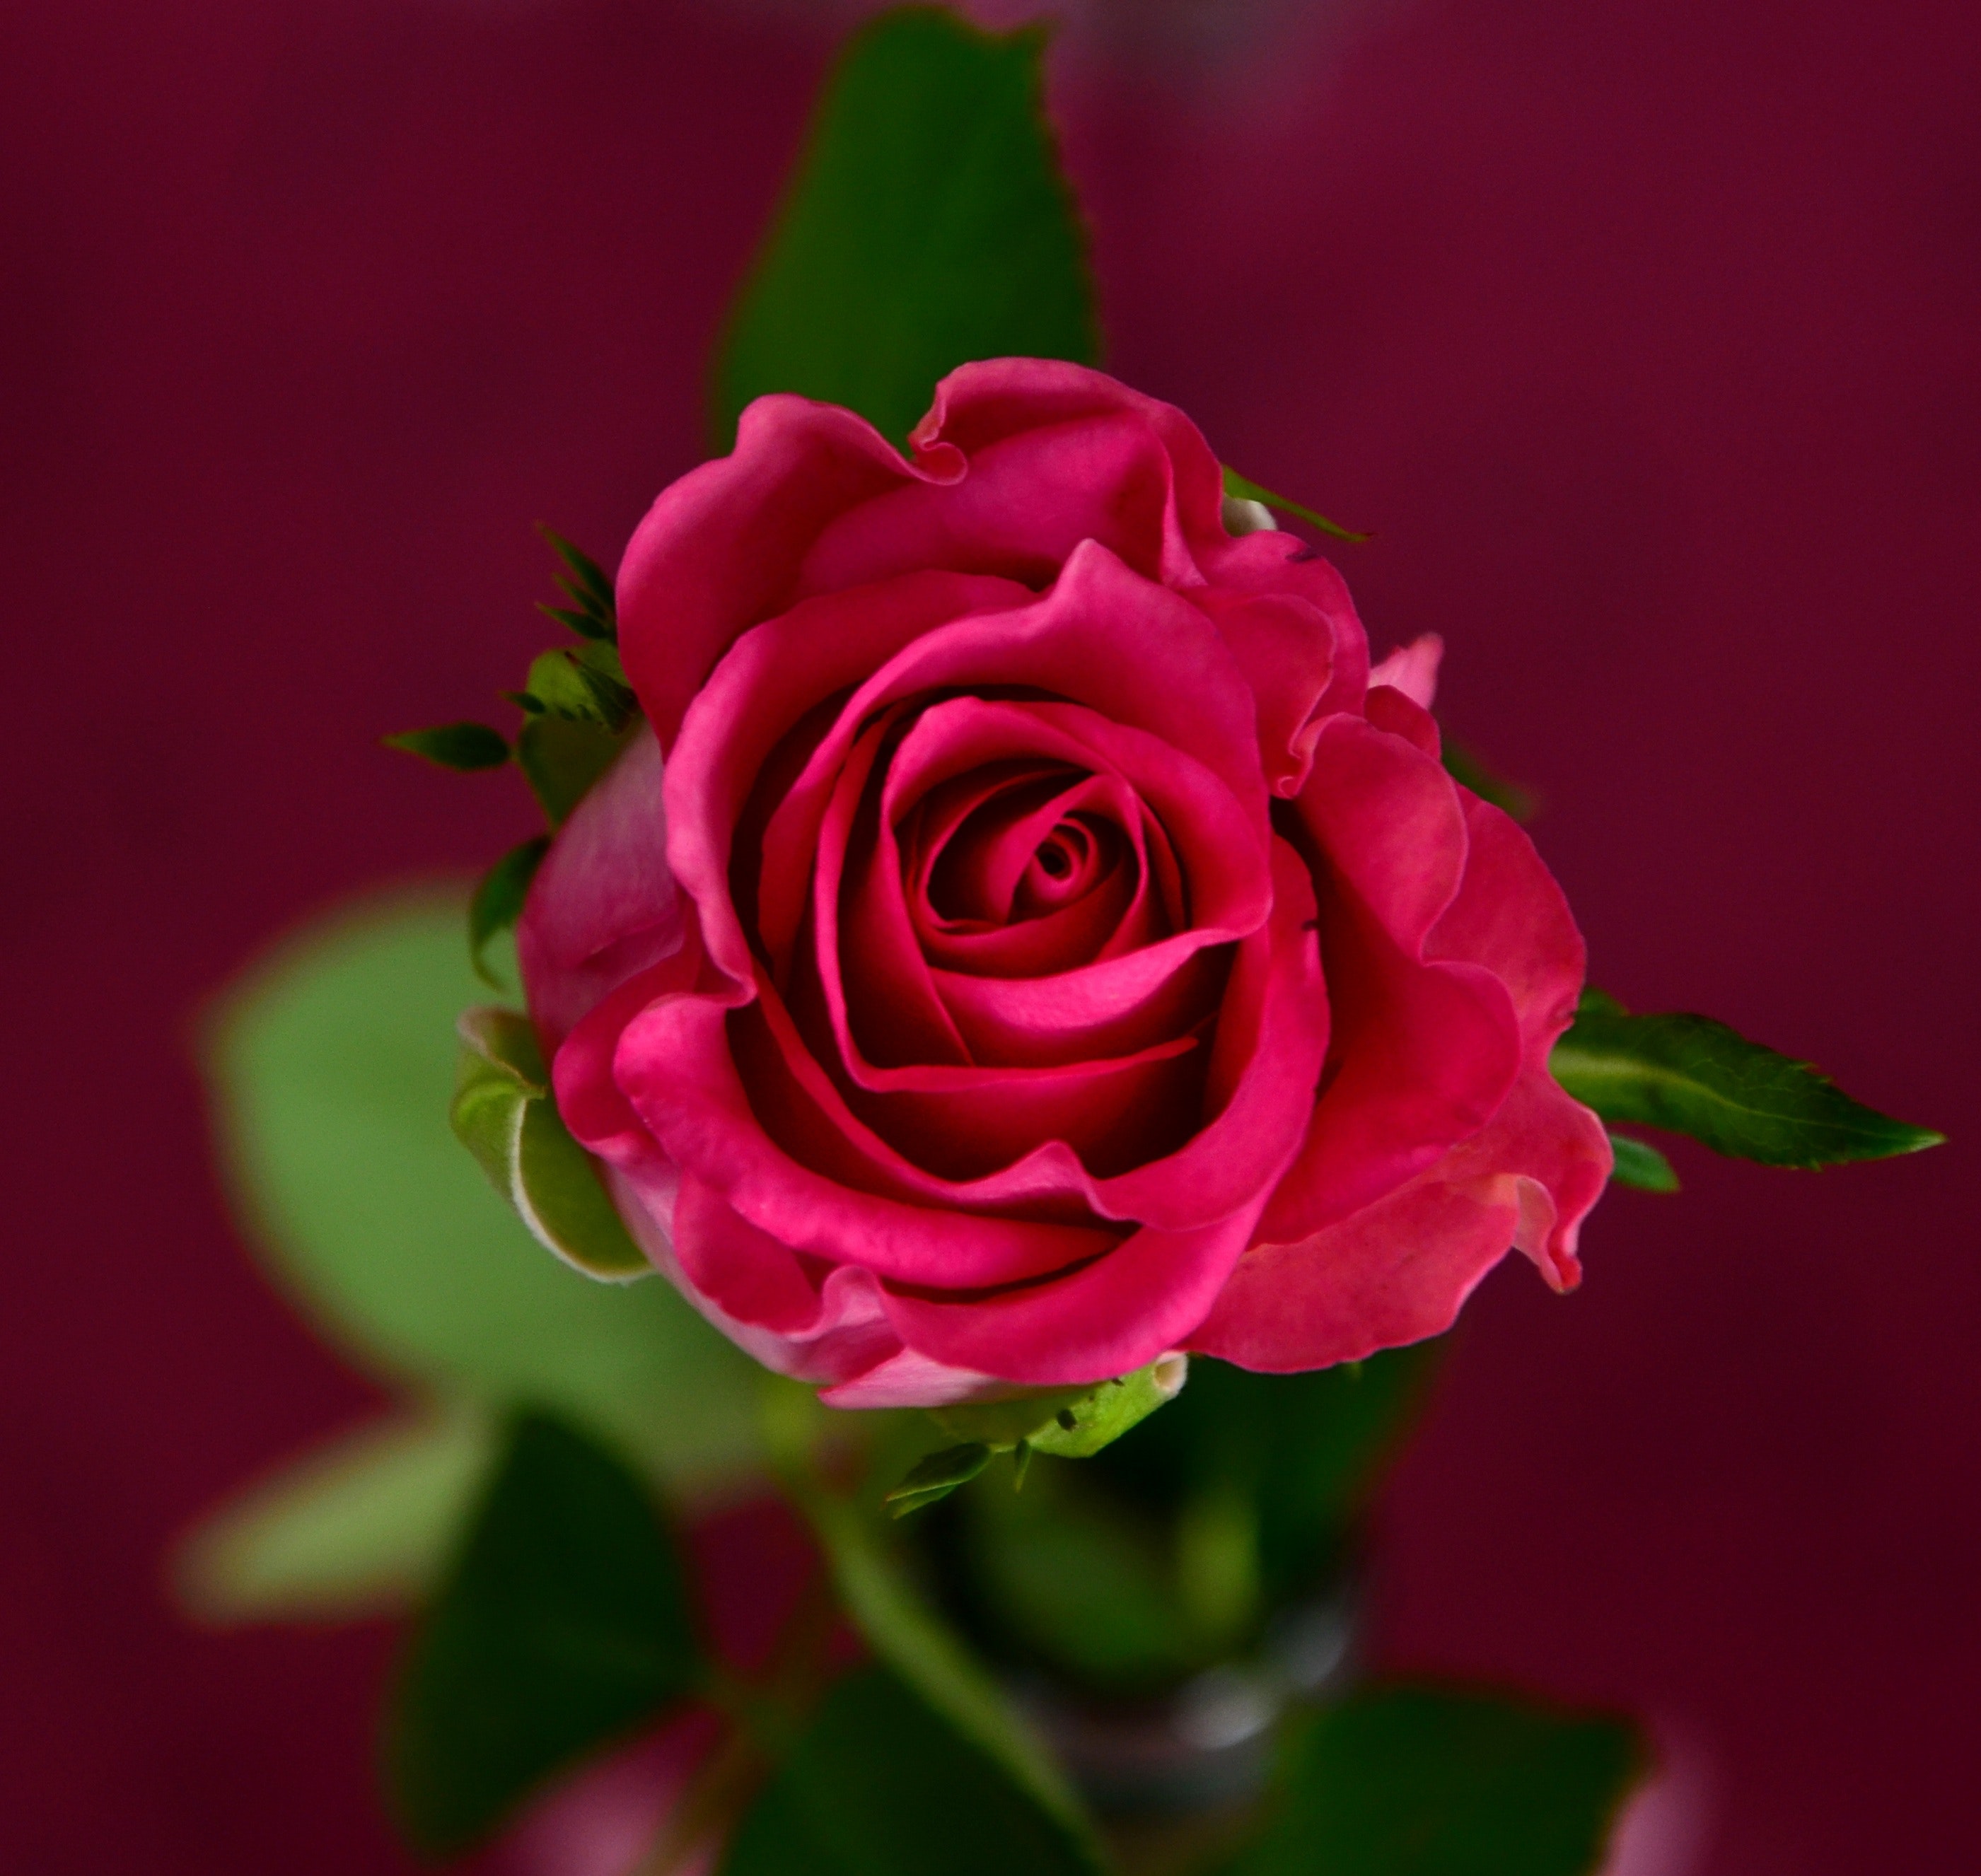 Flower rose image